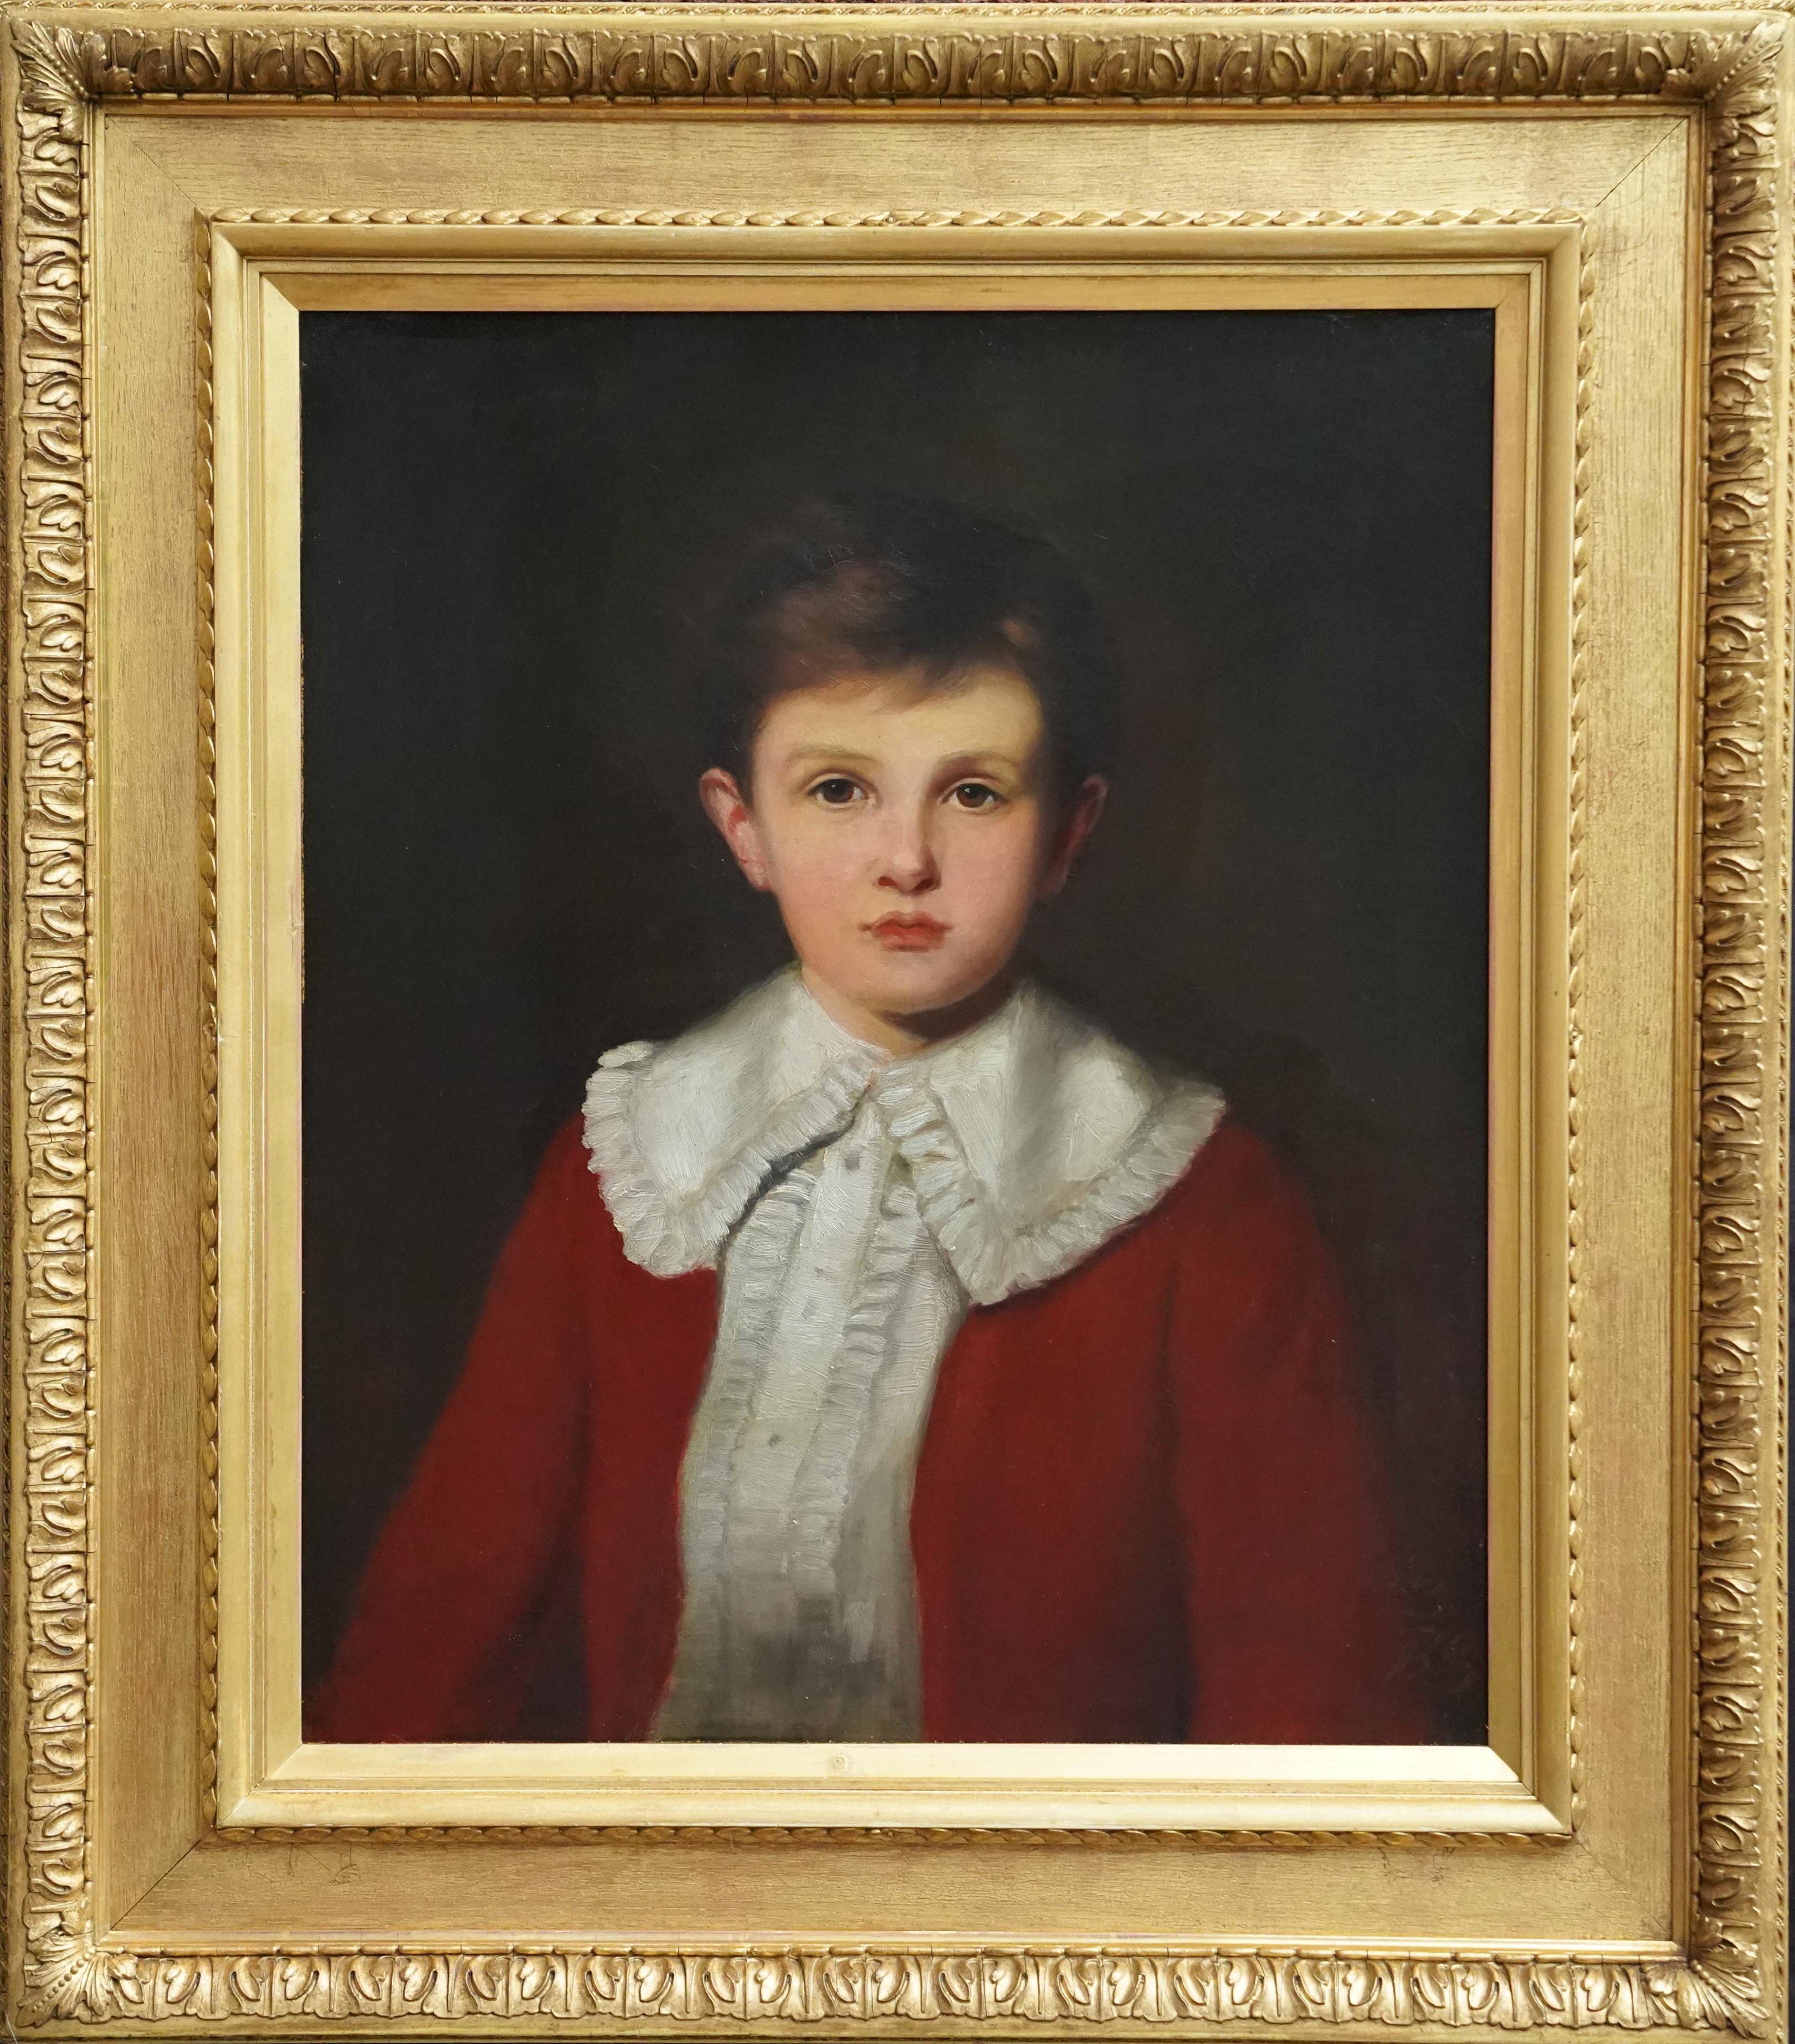 Porträt eines jungen Jungen in rotem Mantel – britisches viktorianisches Ölgemälde von 1892